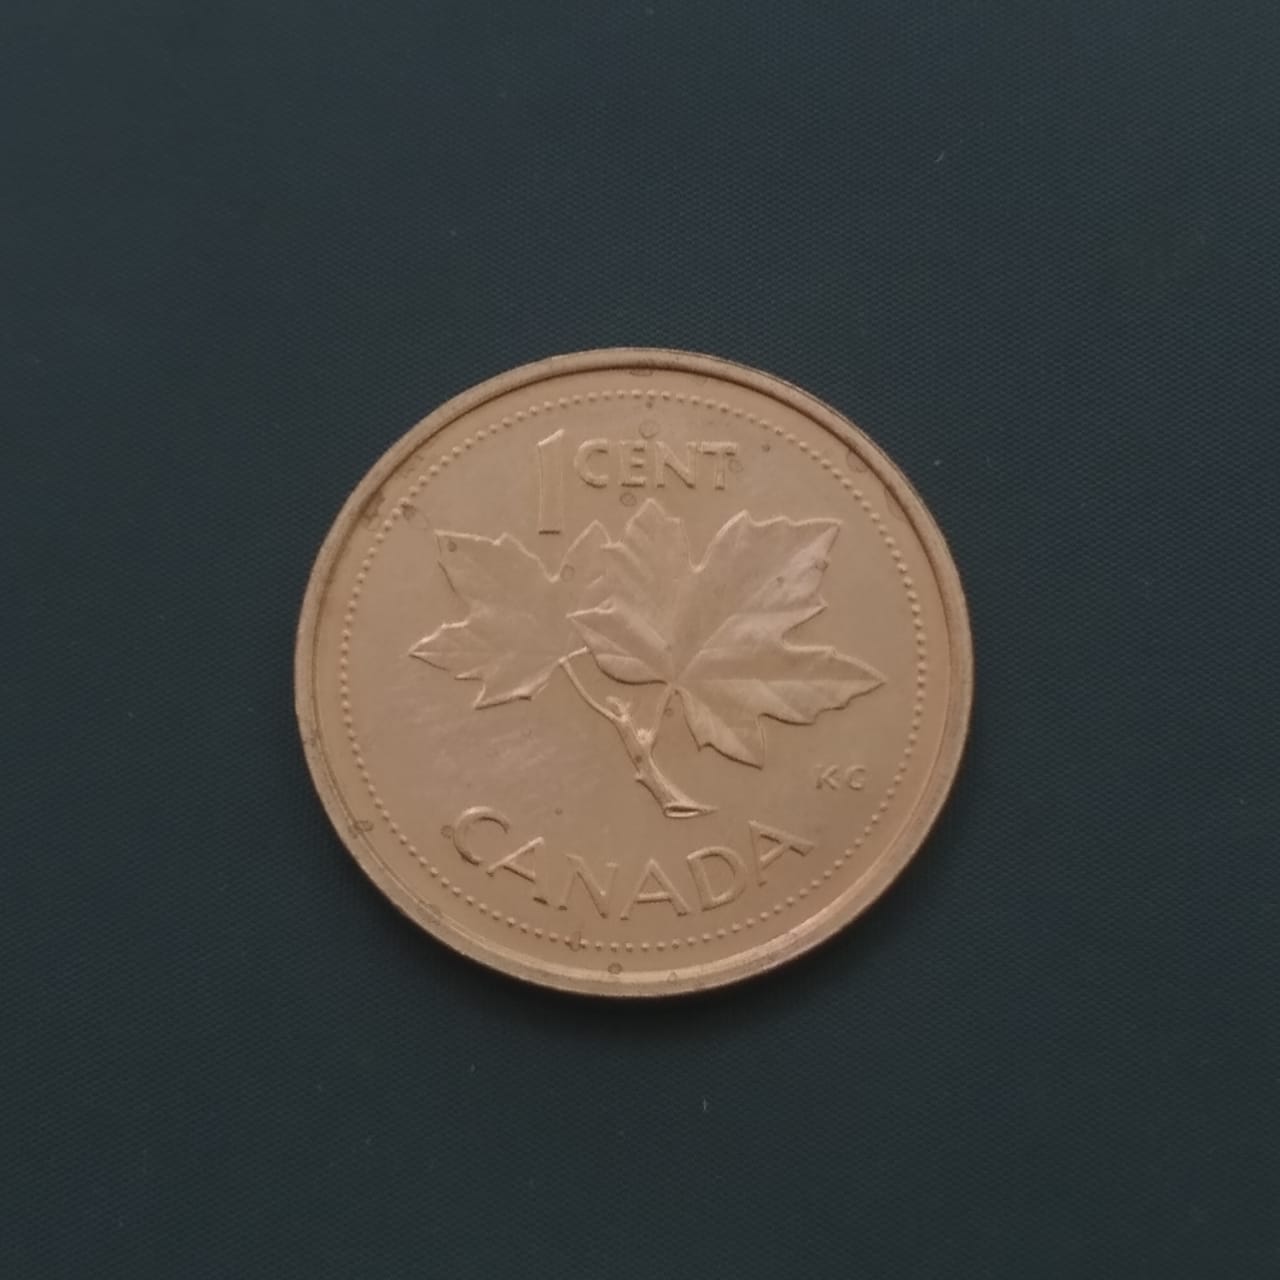 1 Cent - Canada